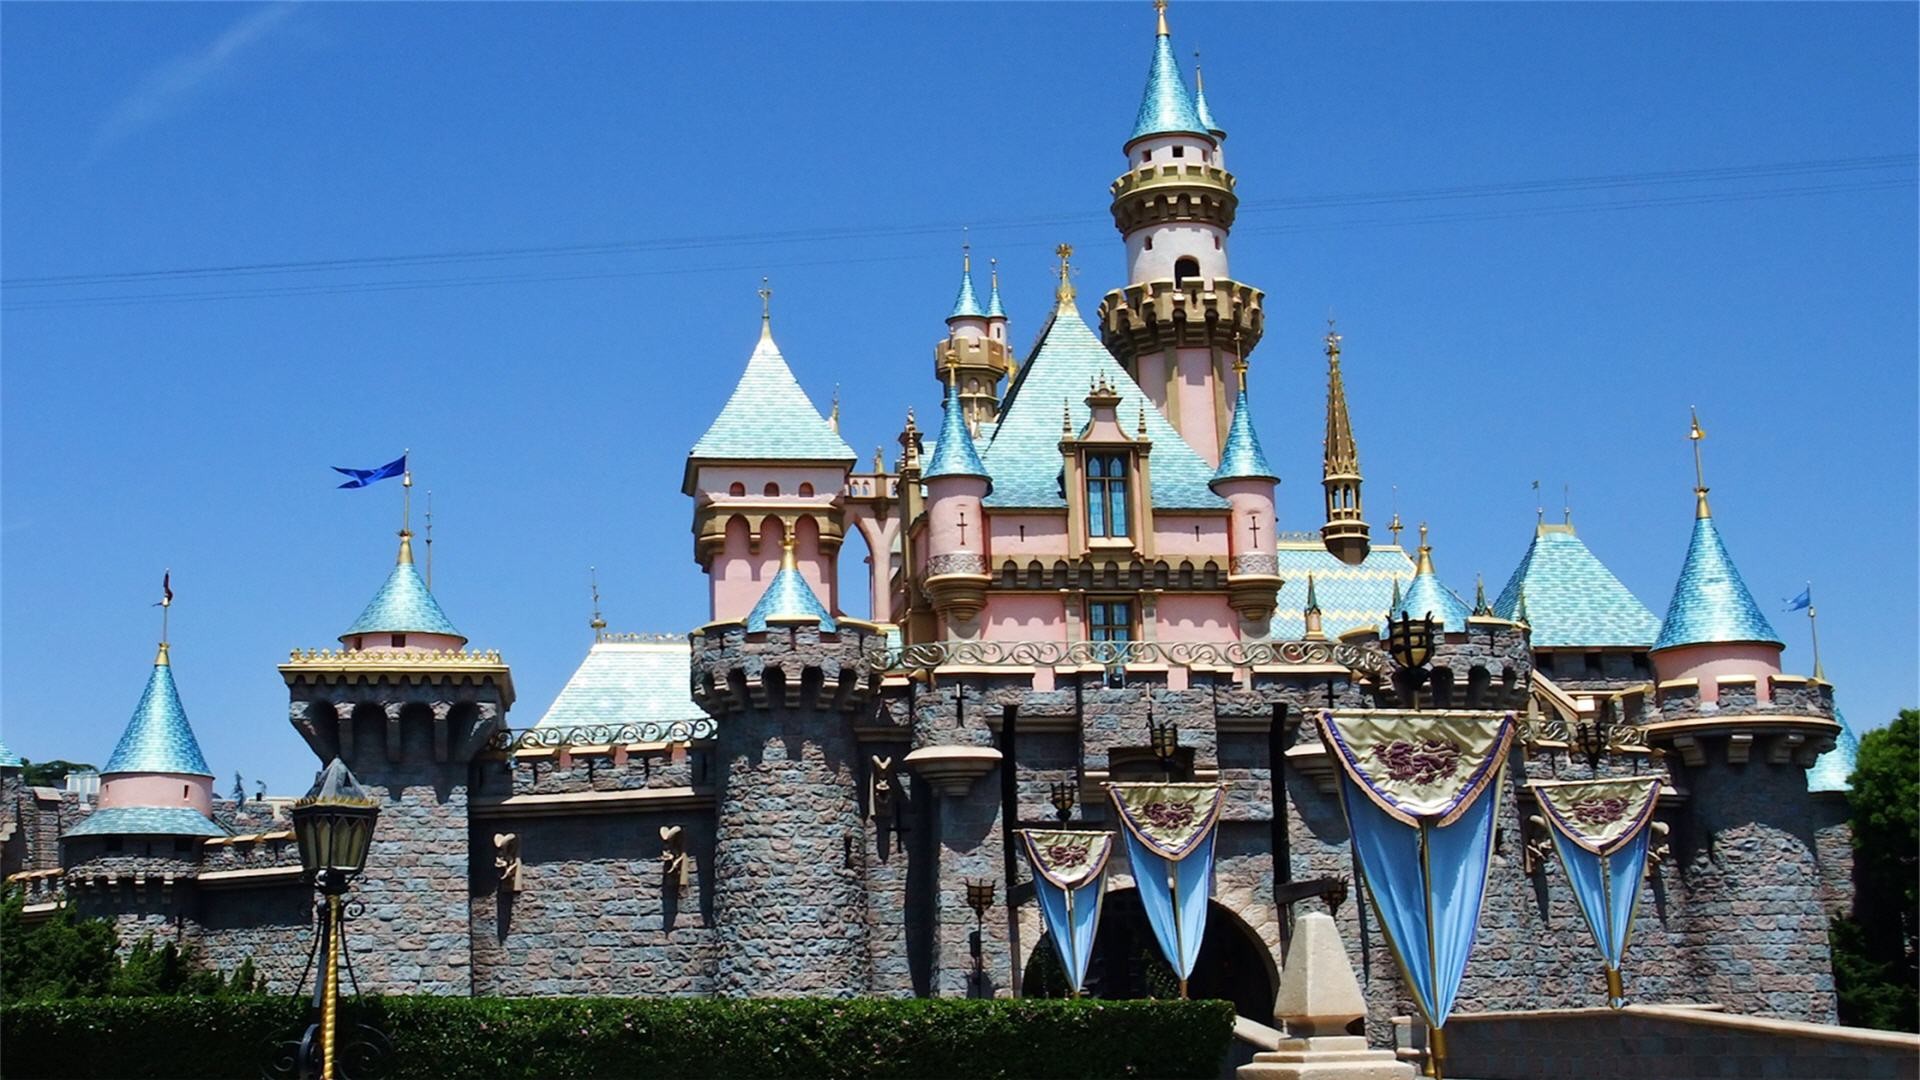 Disneyland Castle Wallpaper.